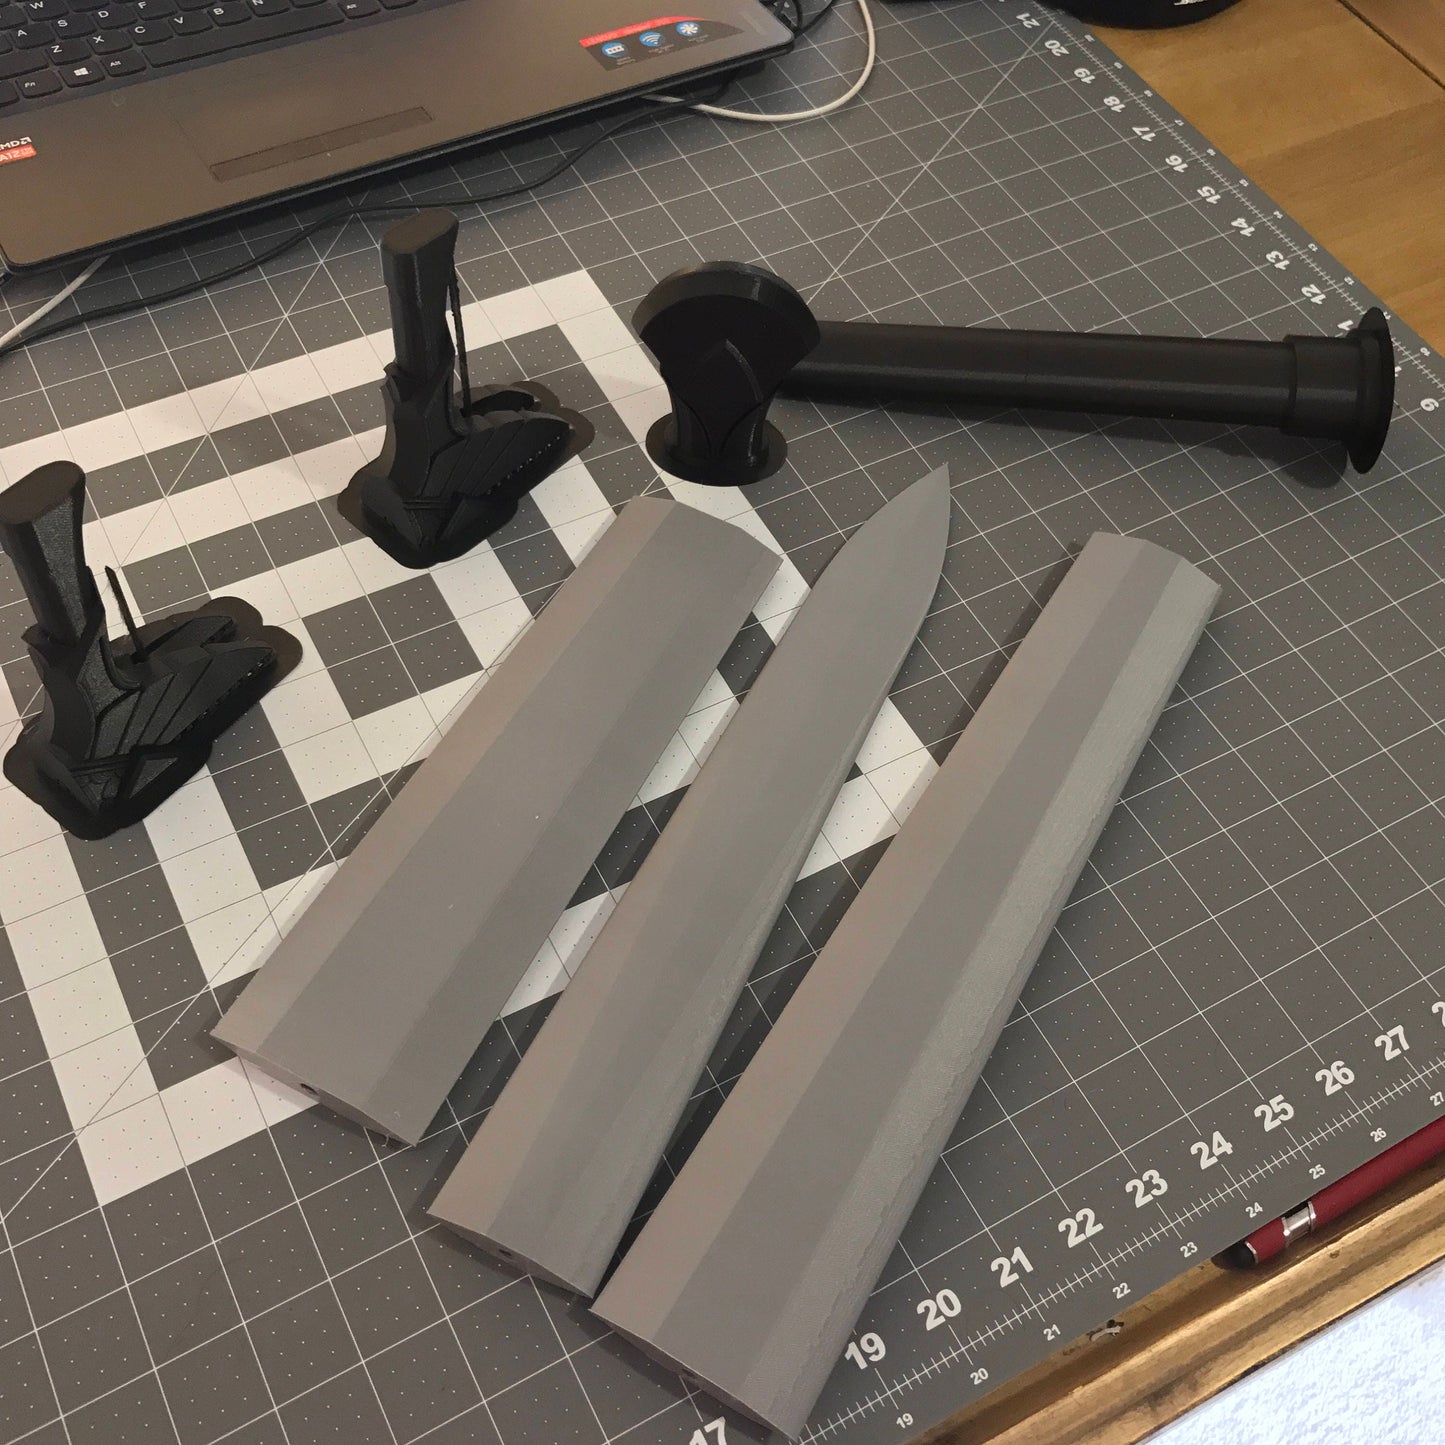 Urfael Sword, Shadow of War - 3d printed kit (diy kit)